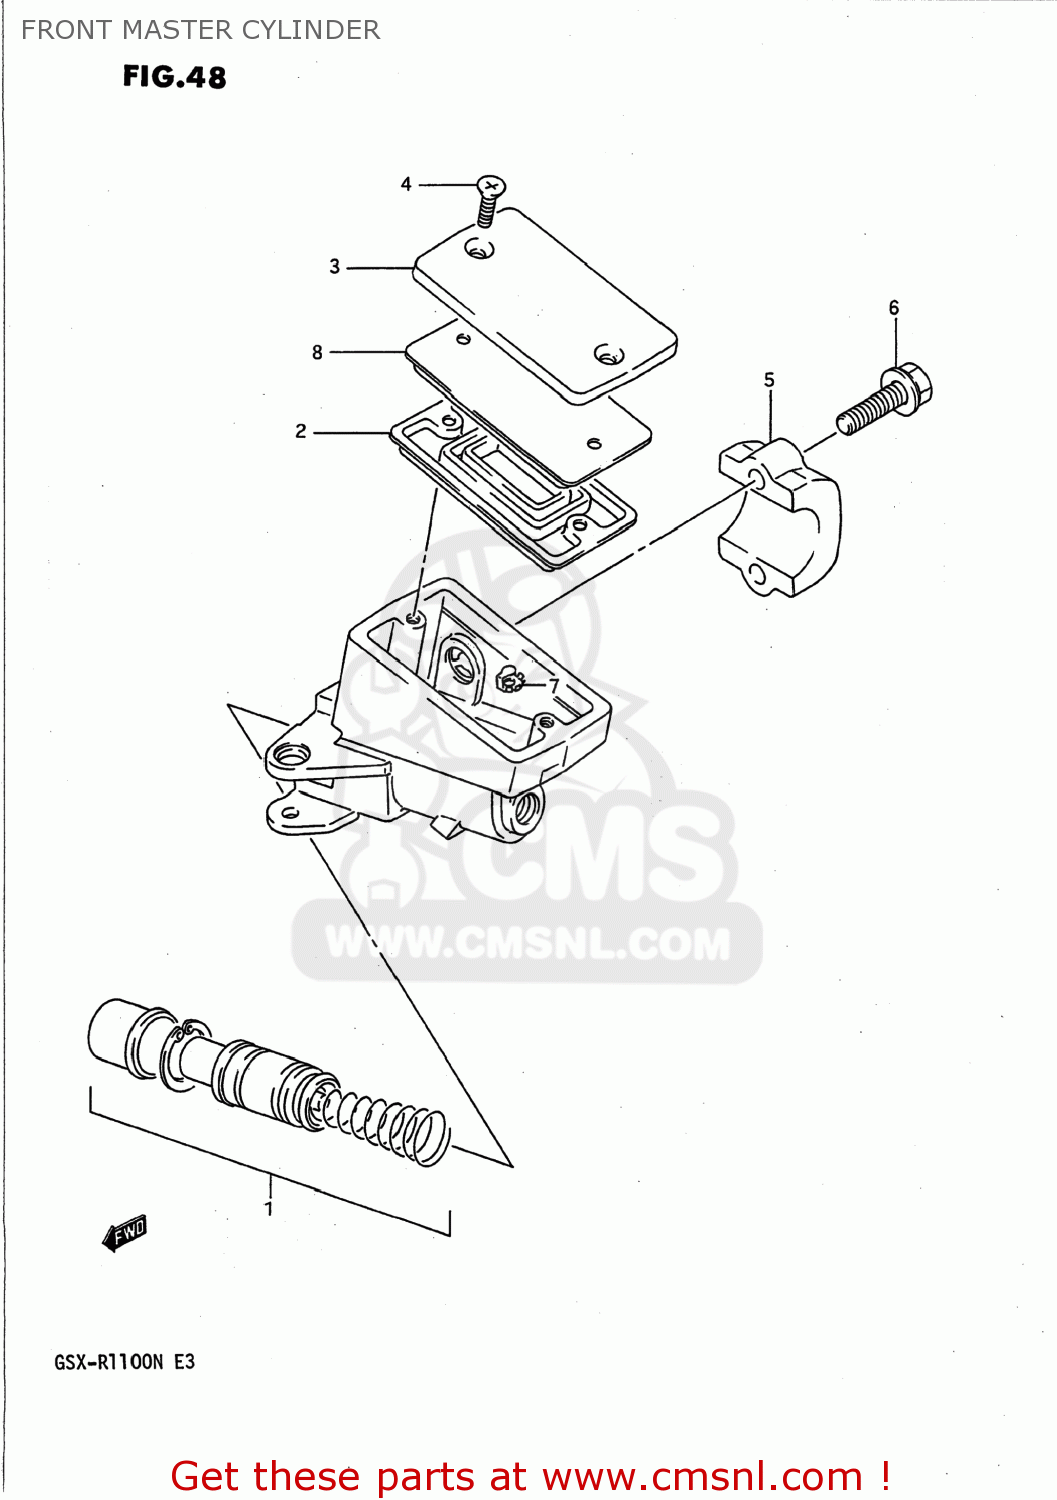 Details about  / FOR 1989-1992 SUZUKI GSX-R1100 FRONT BRAKE MASTER CYLINDER REBUILD KIT